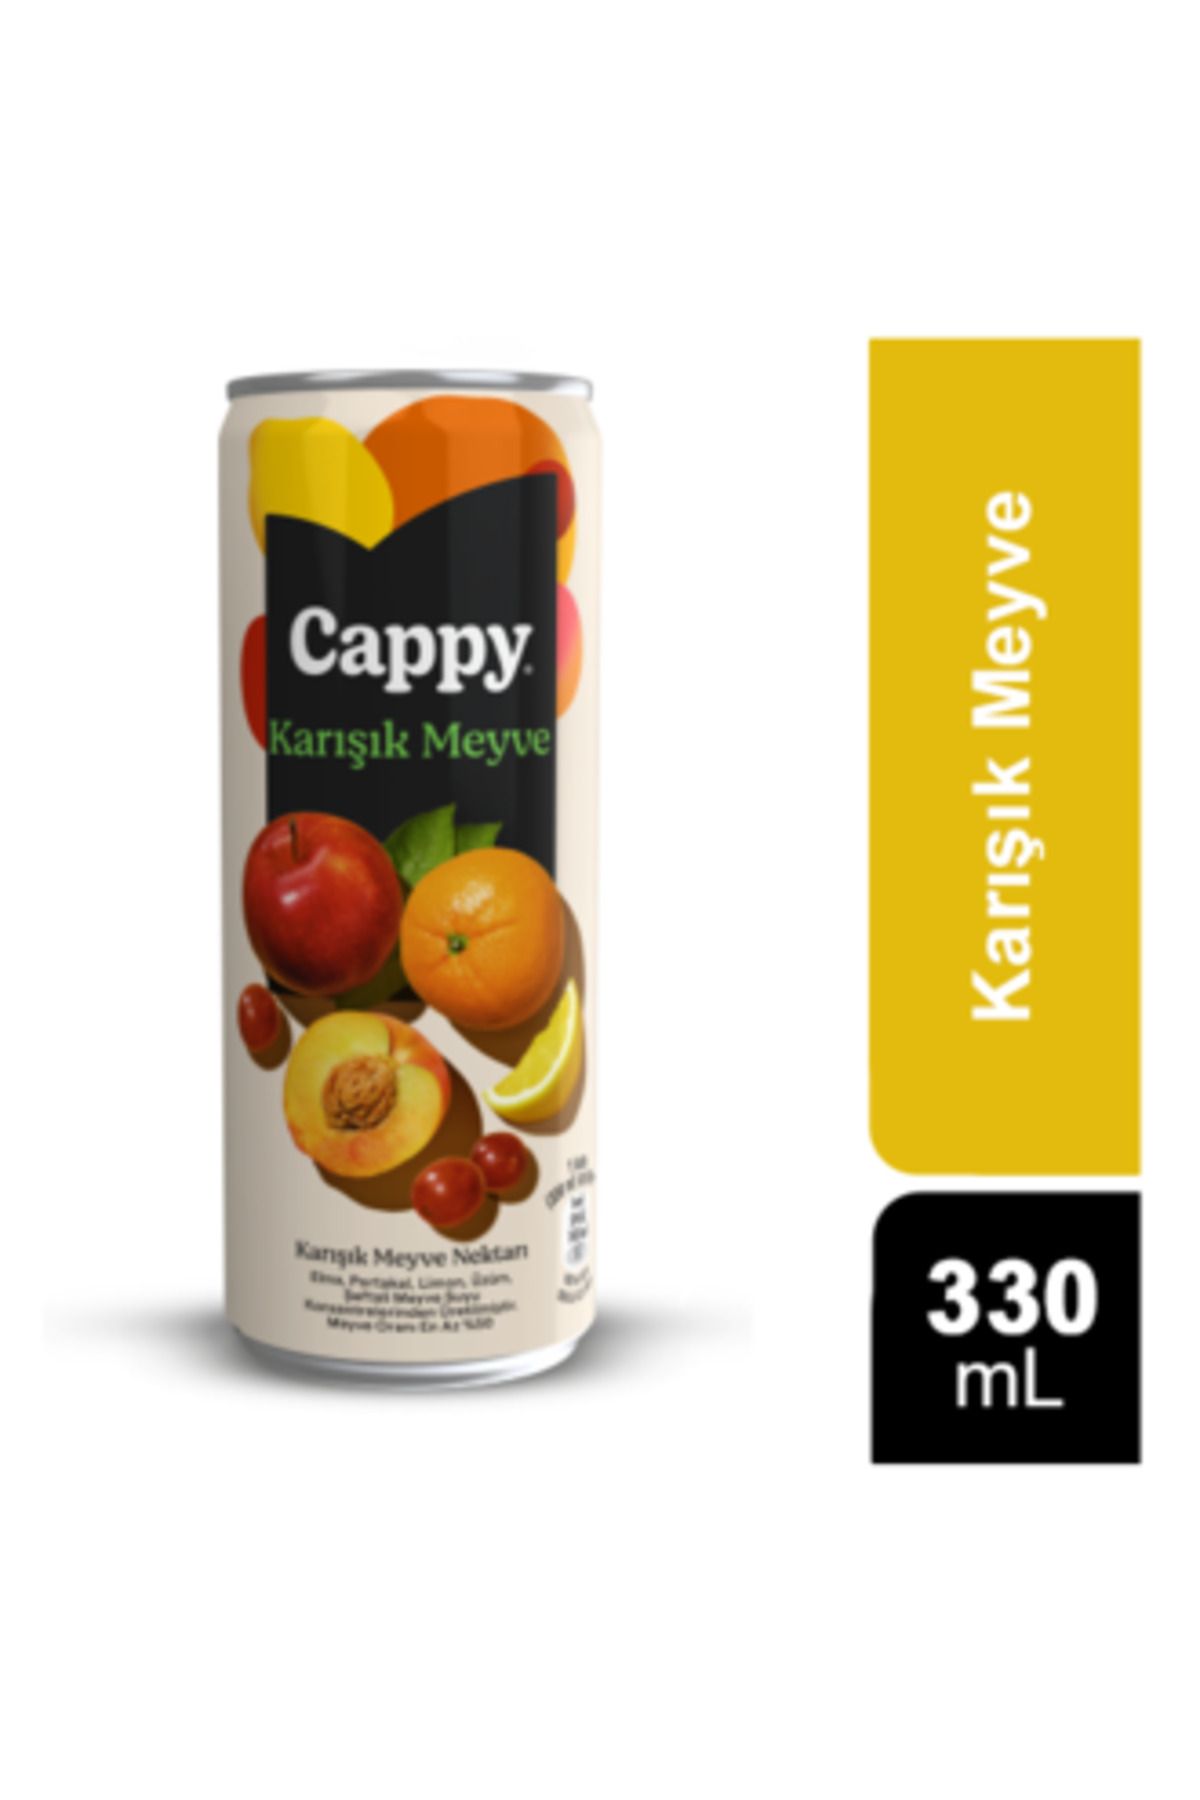 Cappy Bahçe Karışık Meyve Nektarı 330 Ml ( 1 ADET )